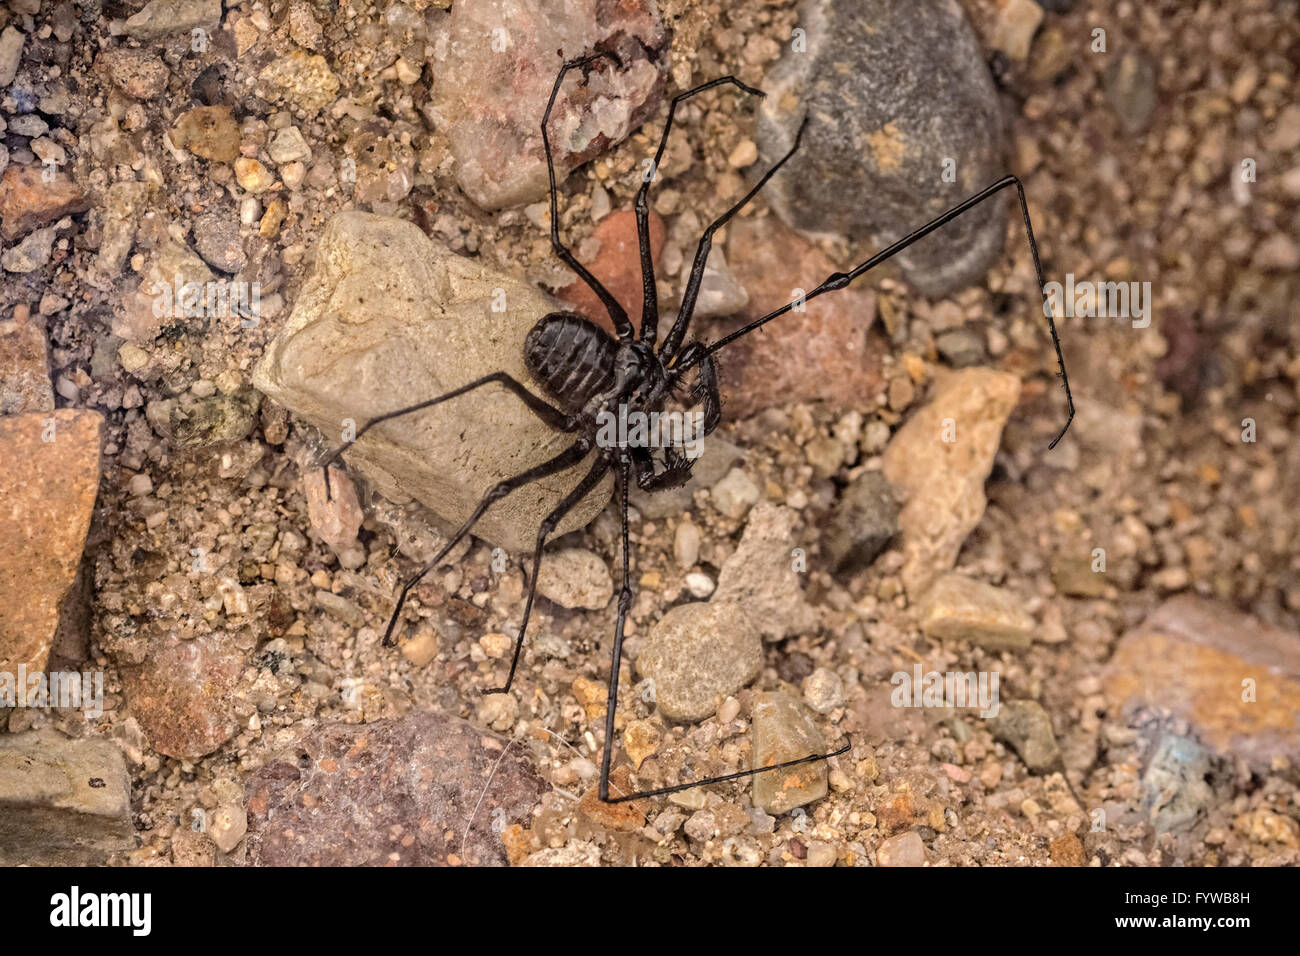 Amblypygi ist eine Bestellung von Arachnid chelicerate Gliederfüßer oder Peitsche Spinnen oder schwanzlosen Peitsche Scorpions. Stockfoto